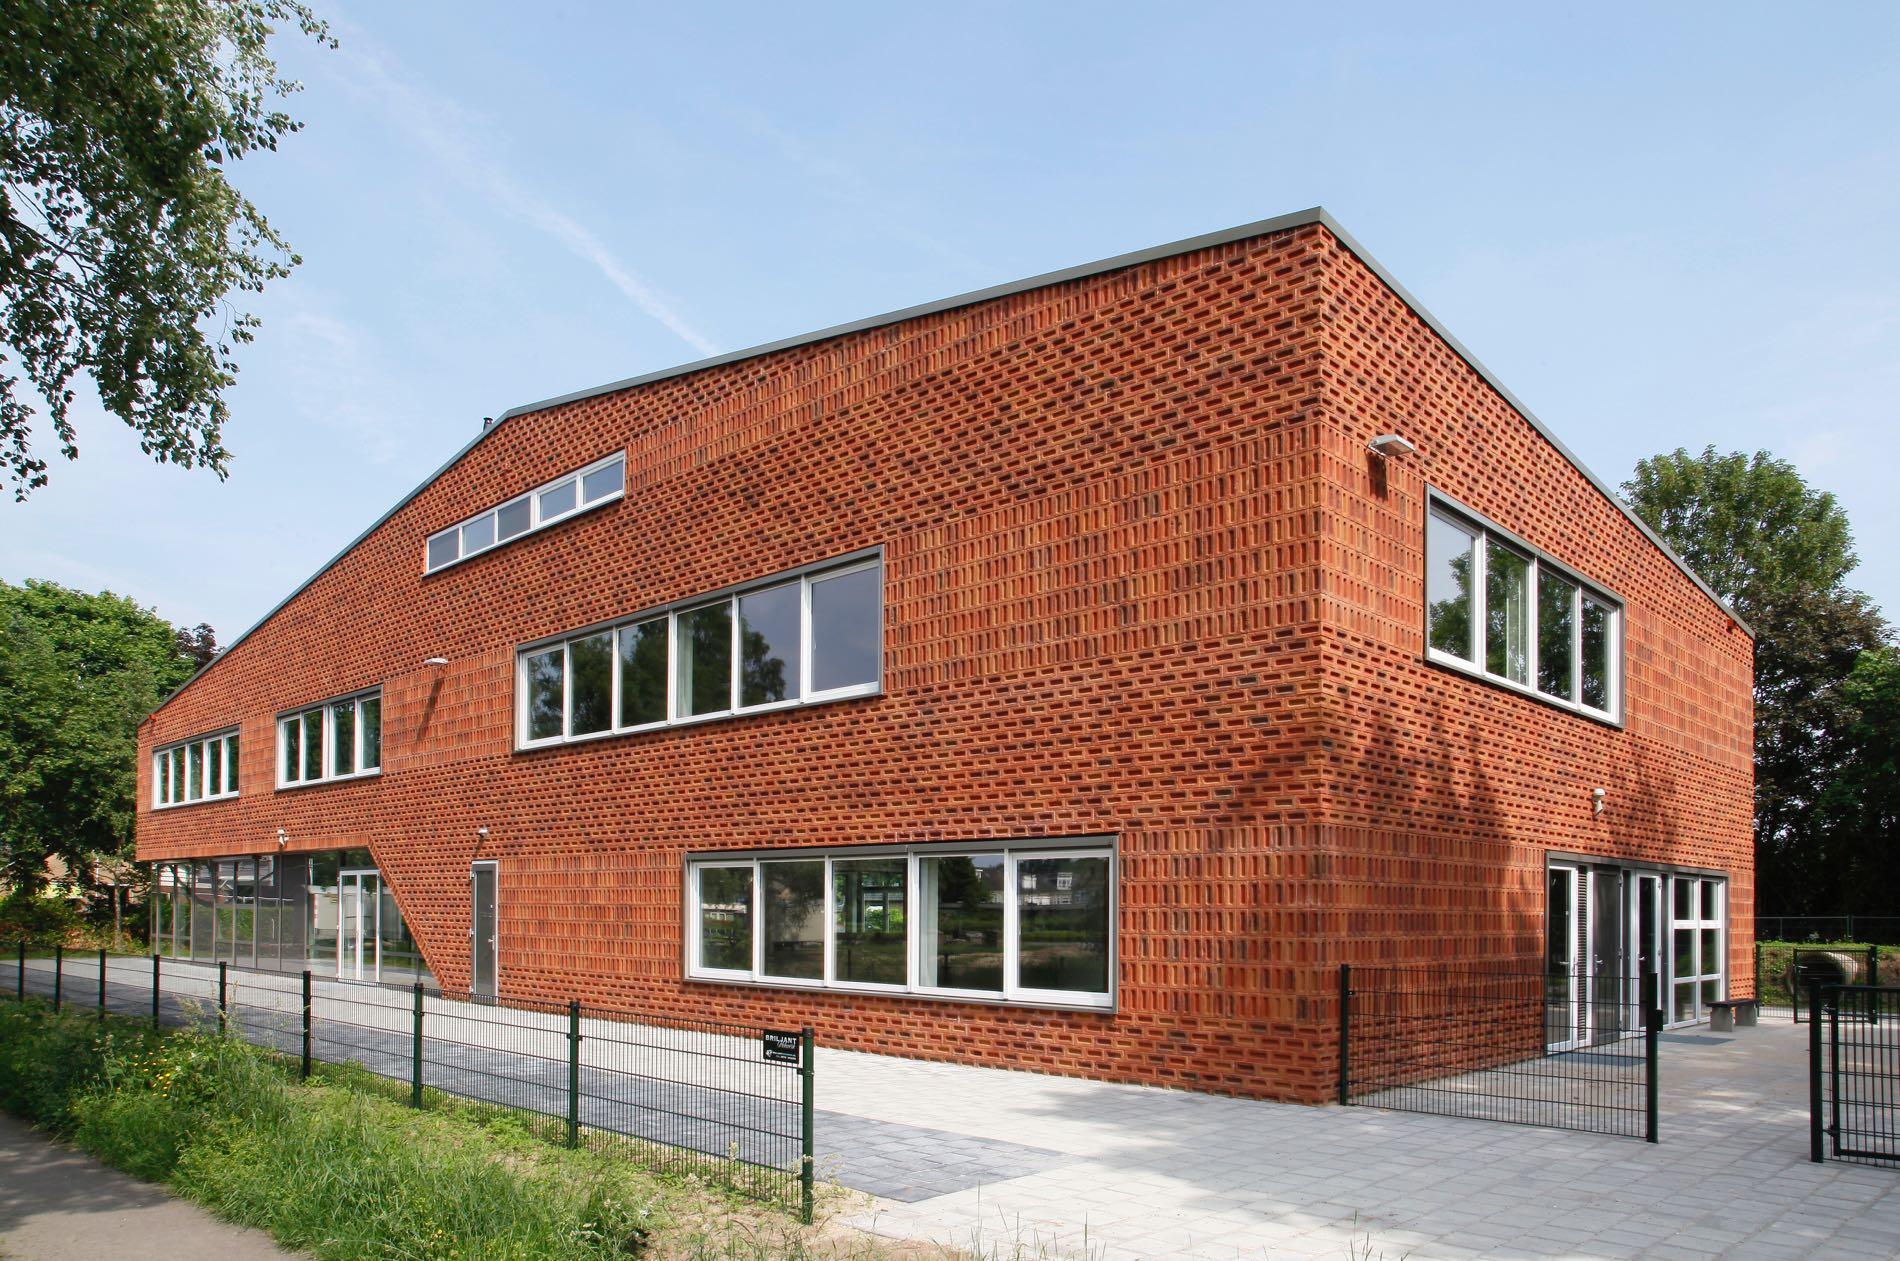 Basisschool Het Web 1a, Apeldoorn - GSG Architecten